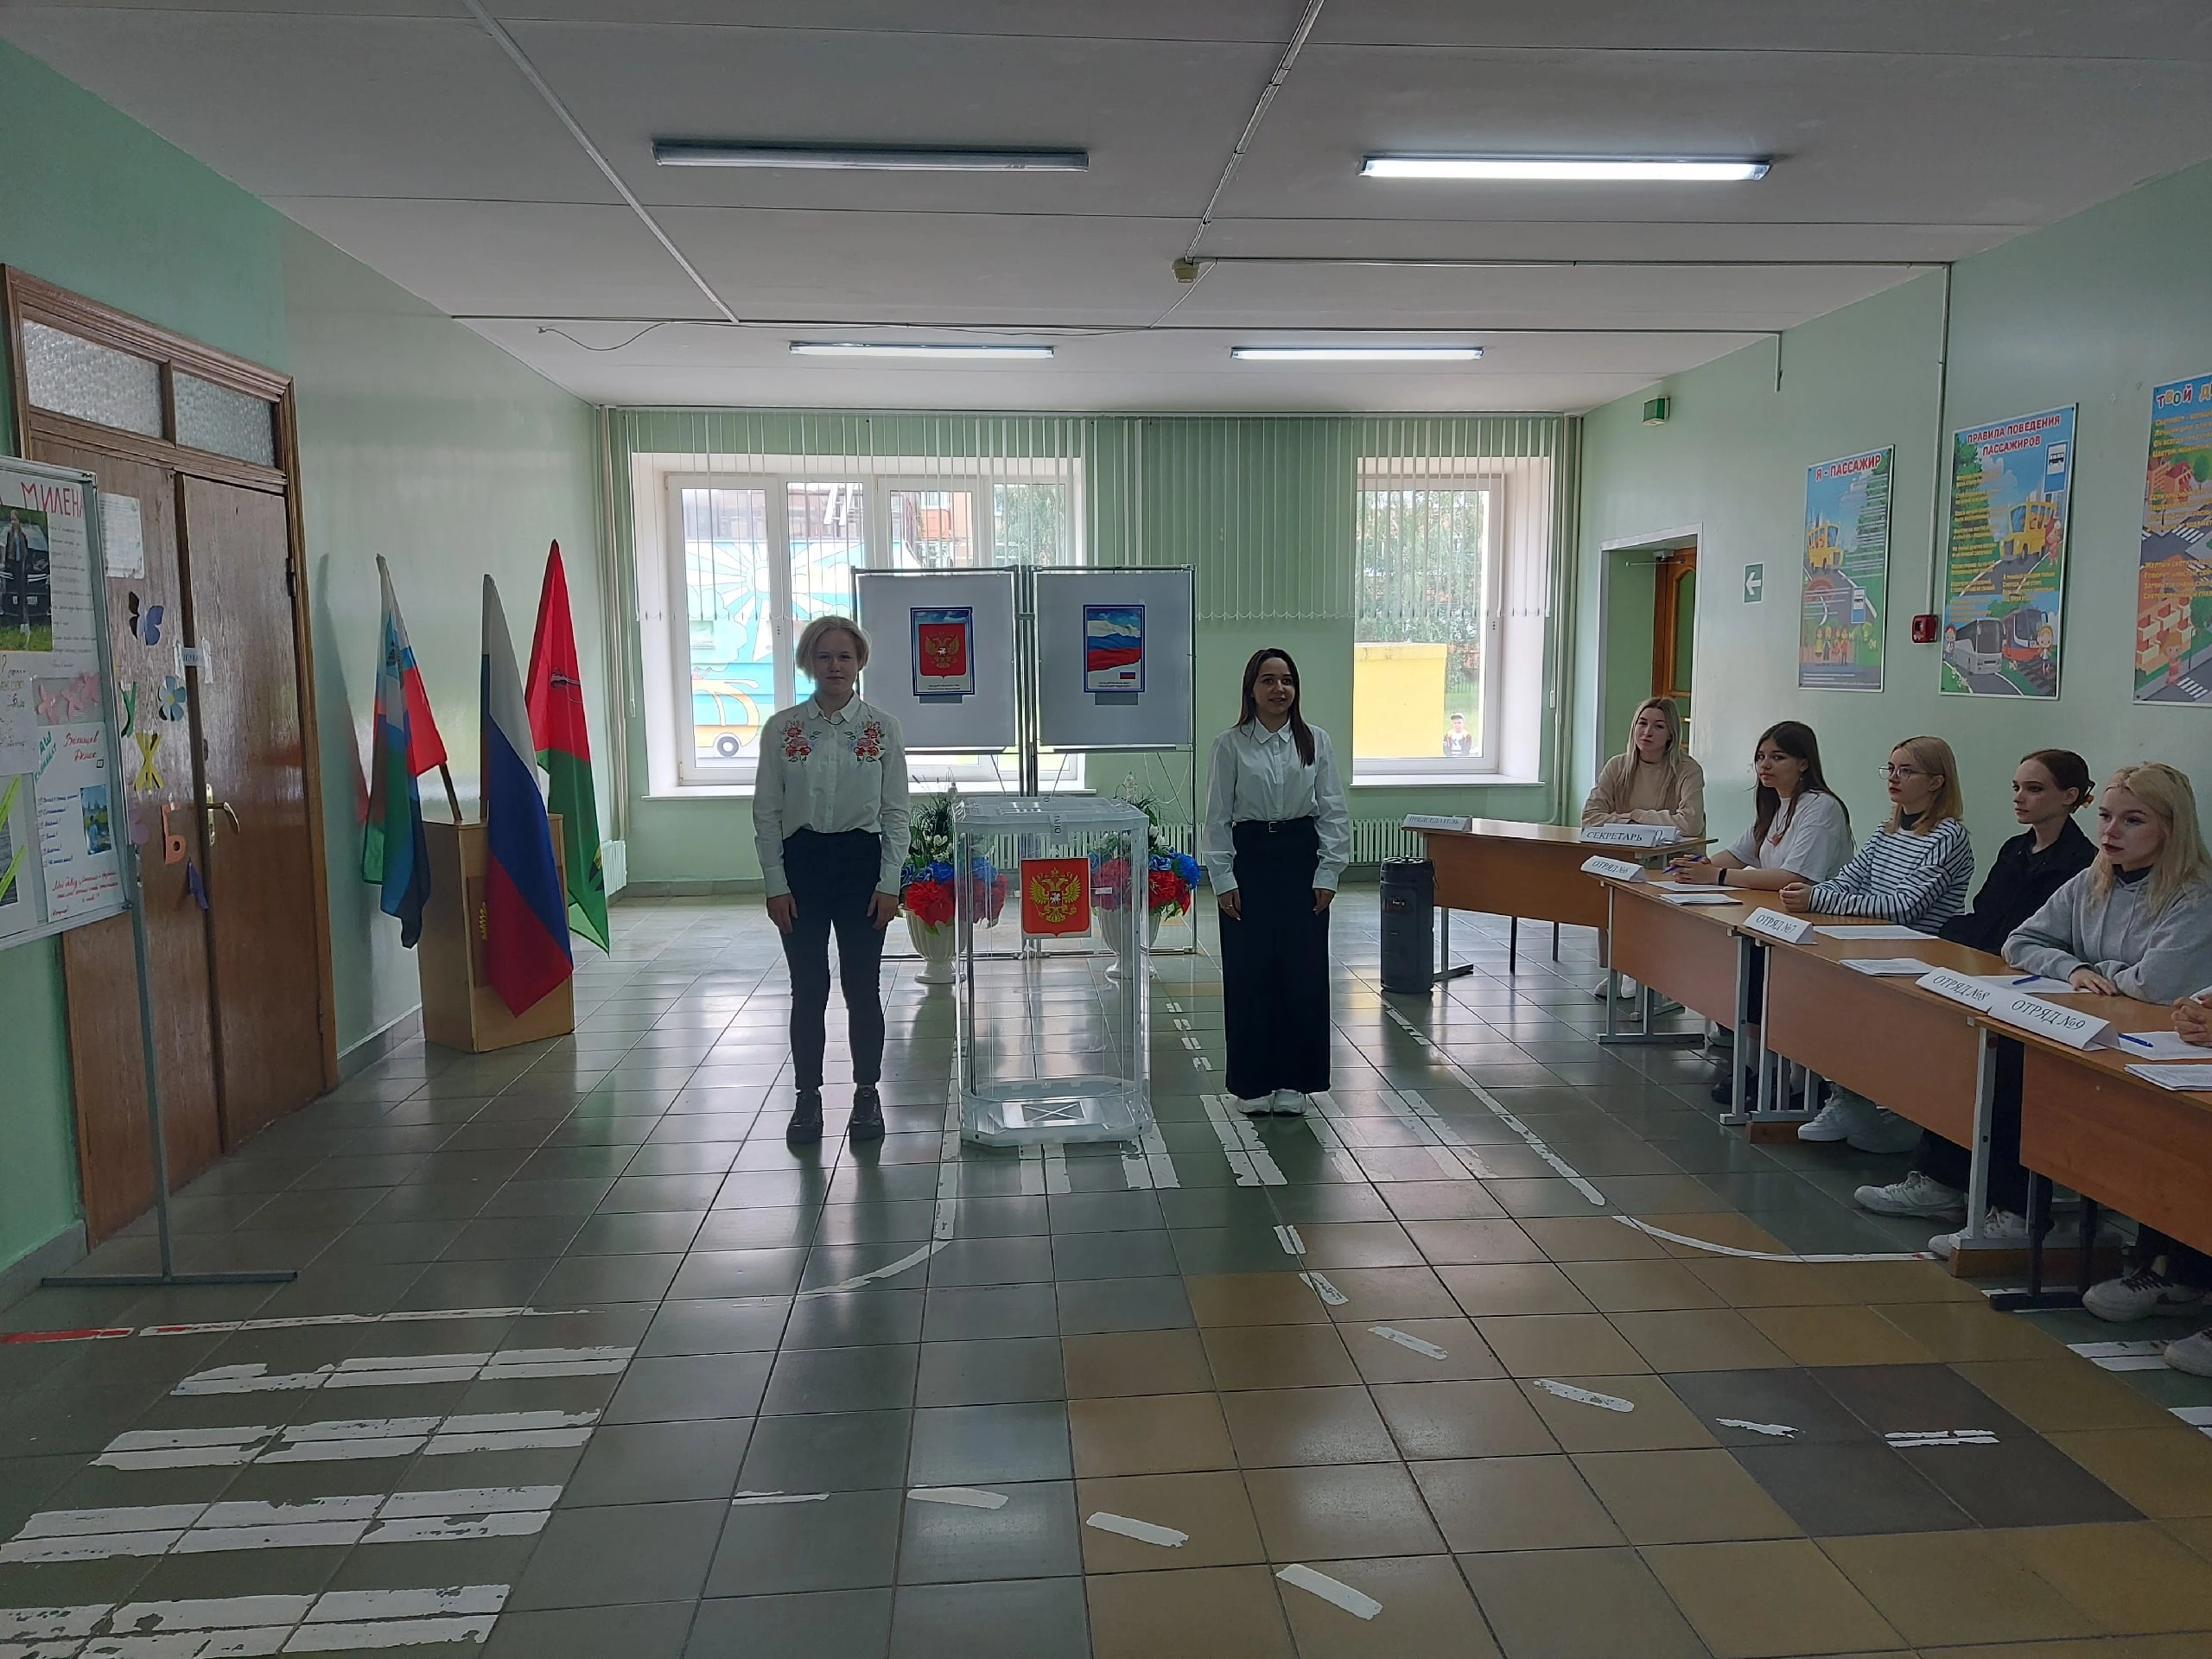 Выборы главного регулировщика на избирательном участке лагеря «Страна Светофория».